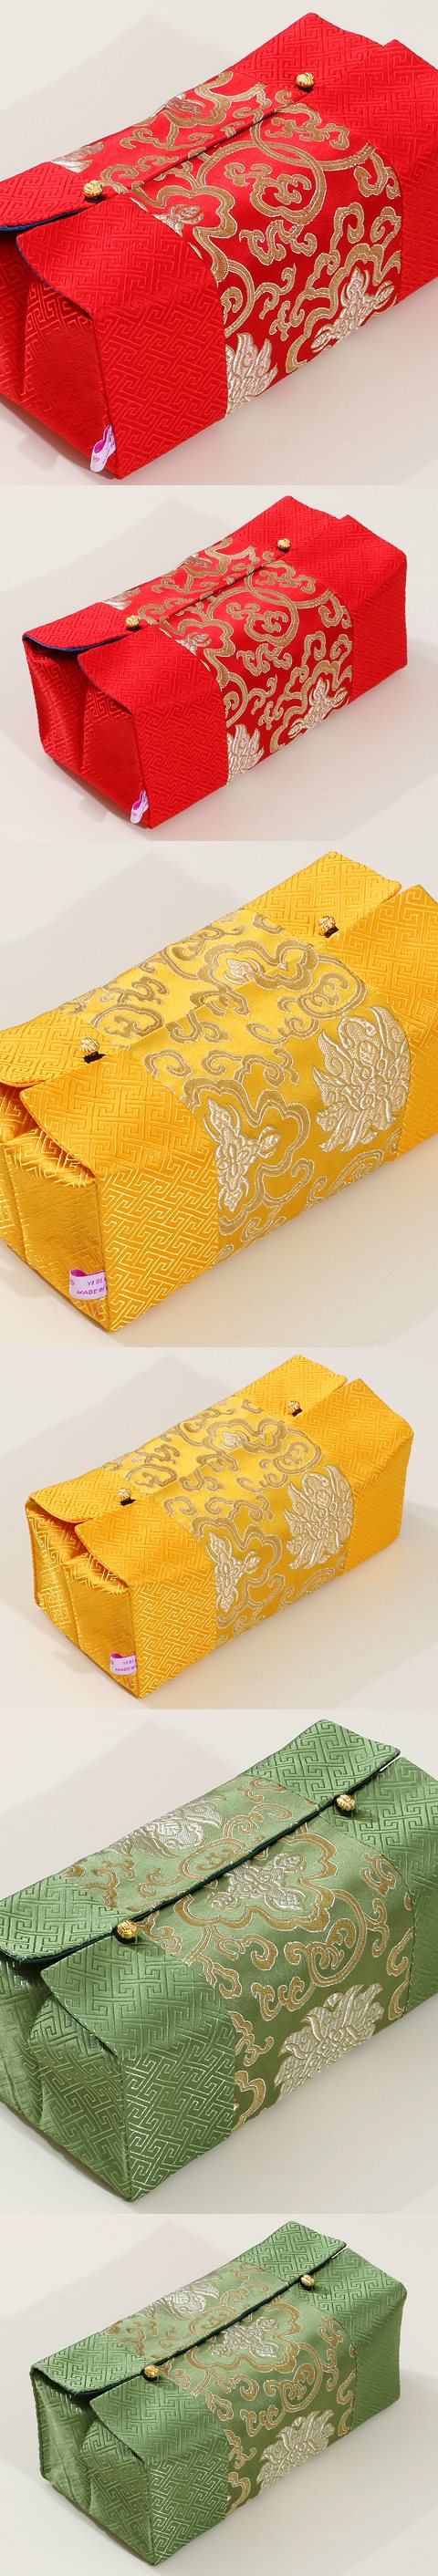 中式民族風刺繡紙巾盒套